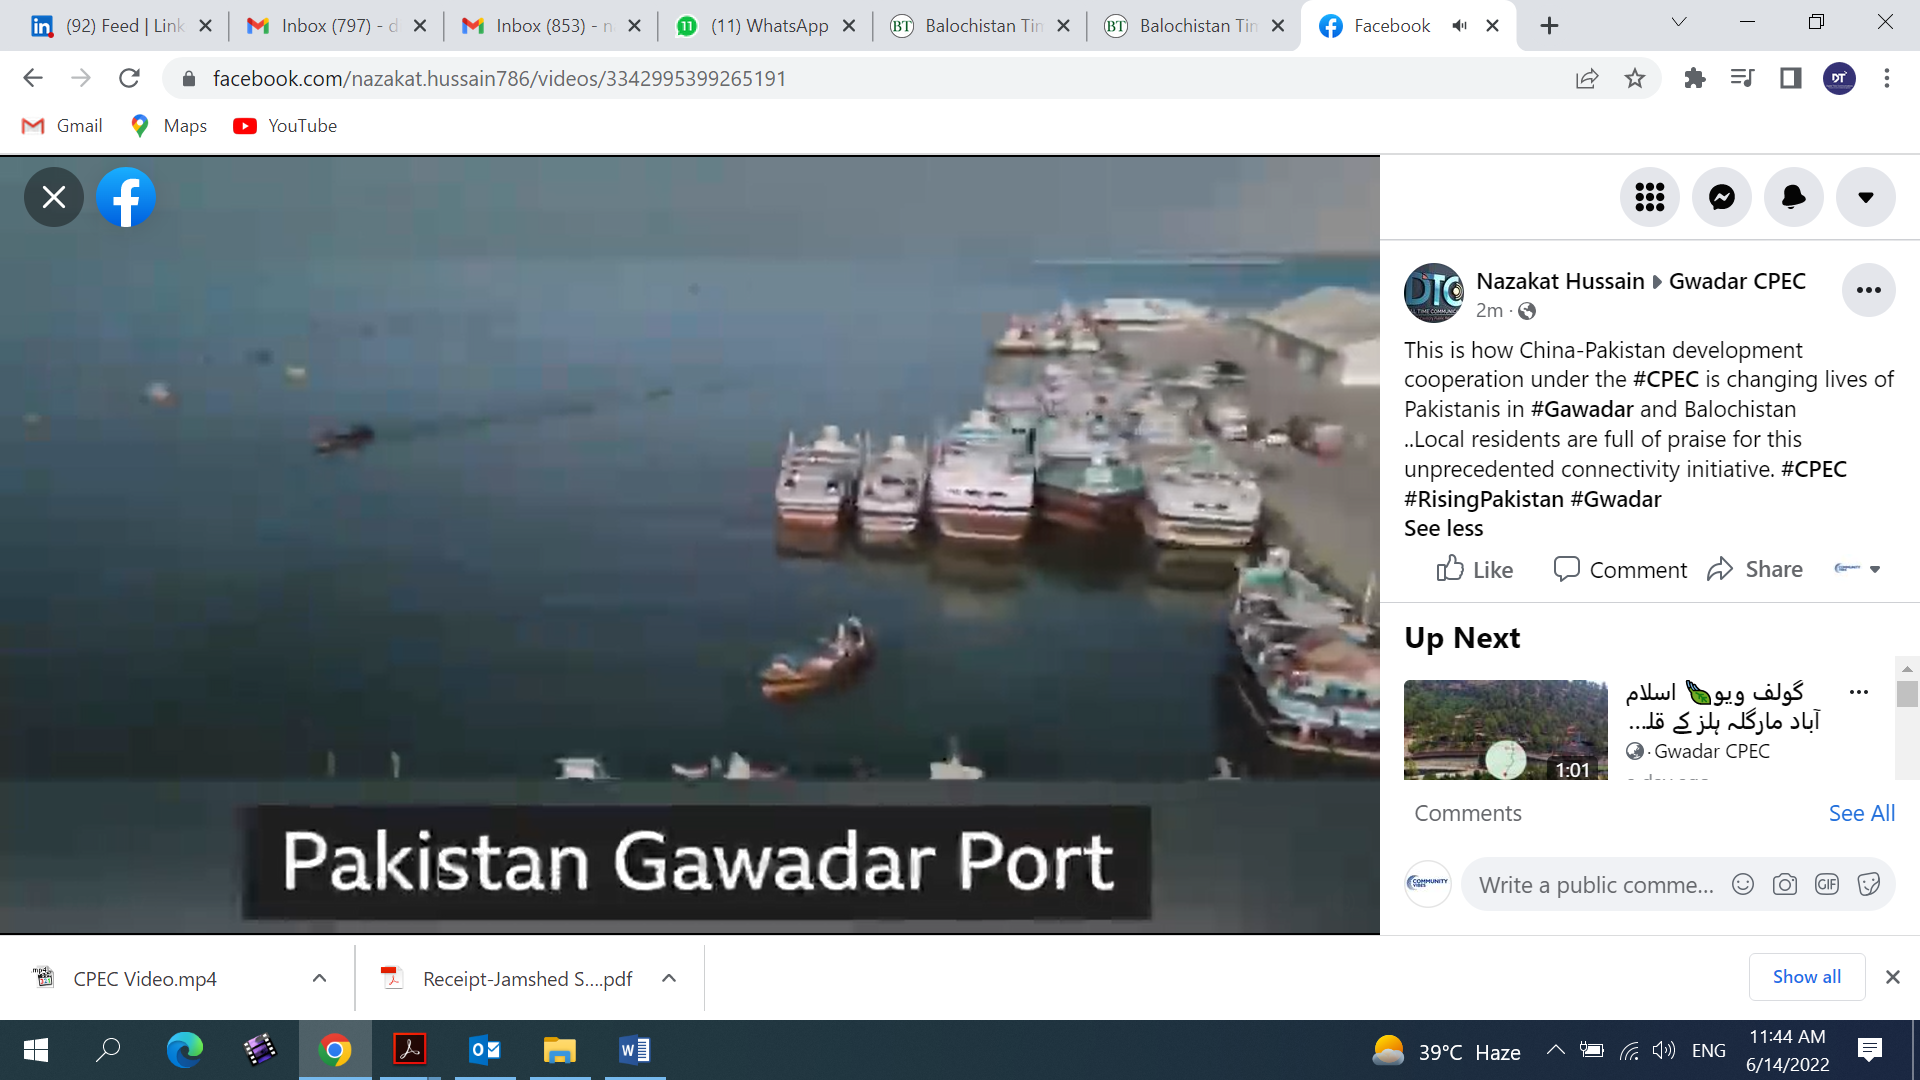 Gwadar CPEC